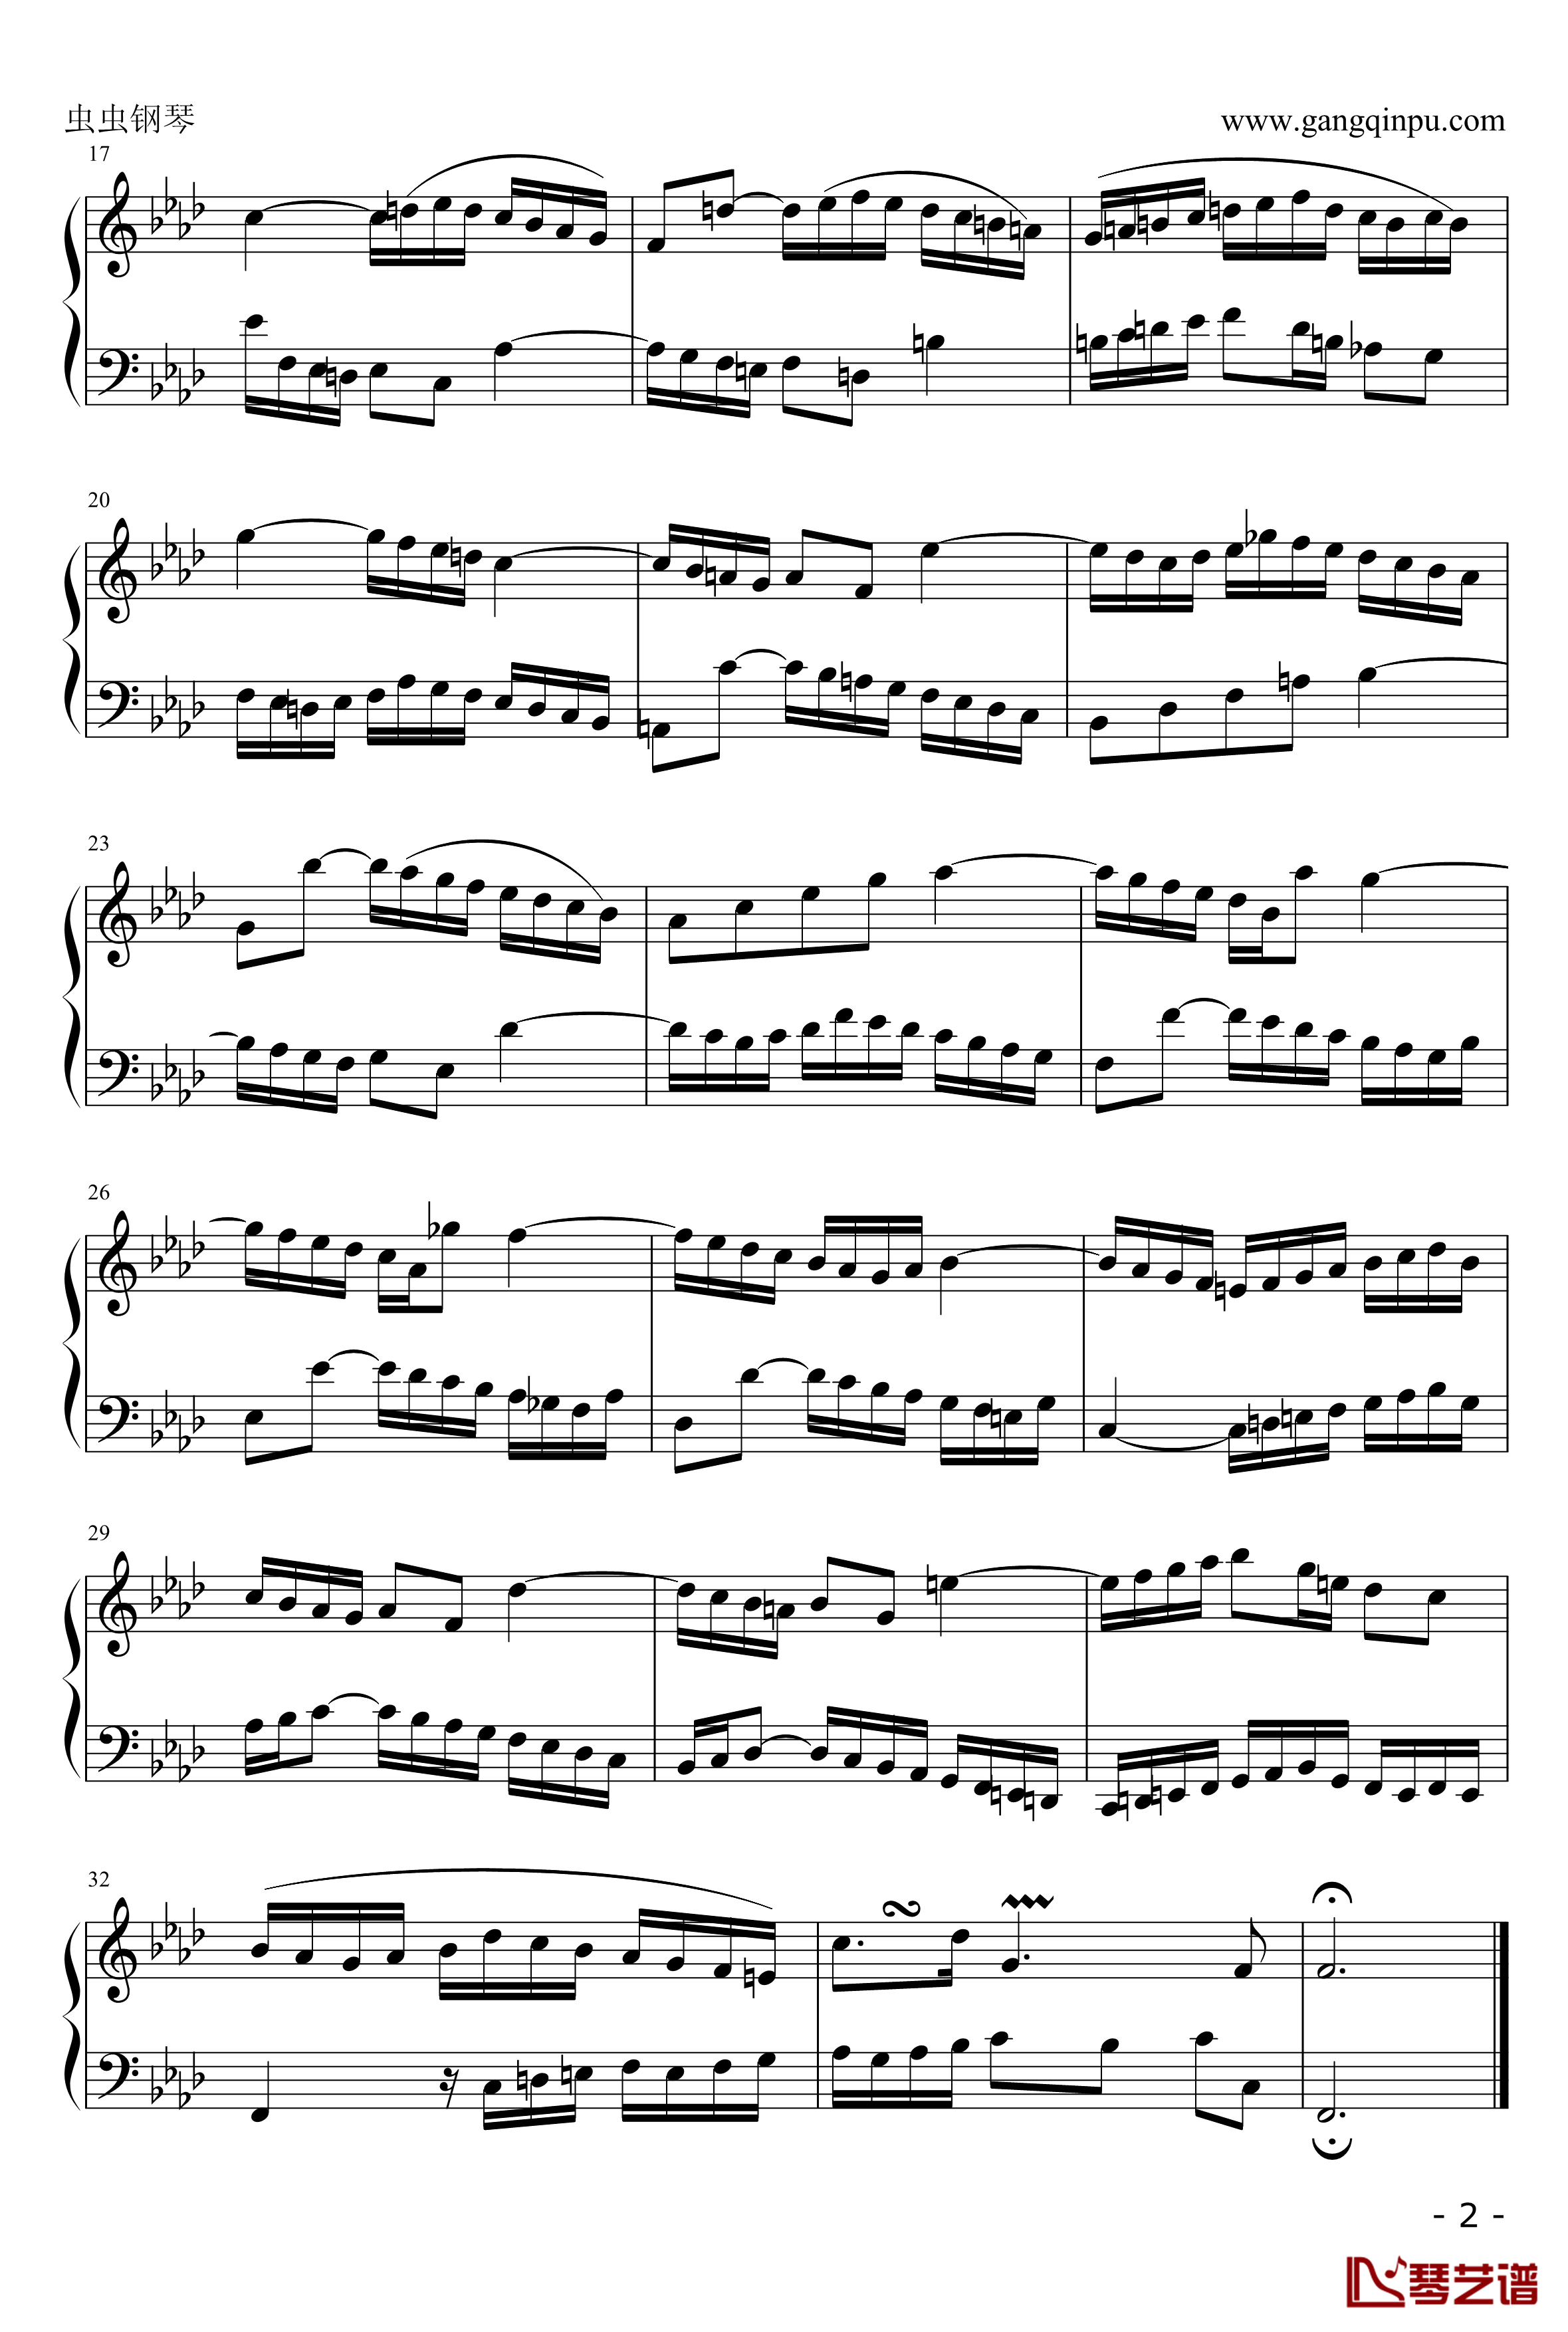 二部创意NO.9 钢琴谱-巴赫-P.E.Bach-第九首2